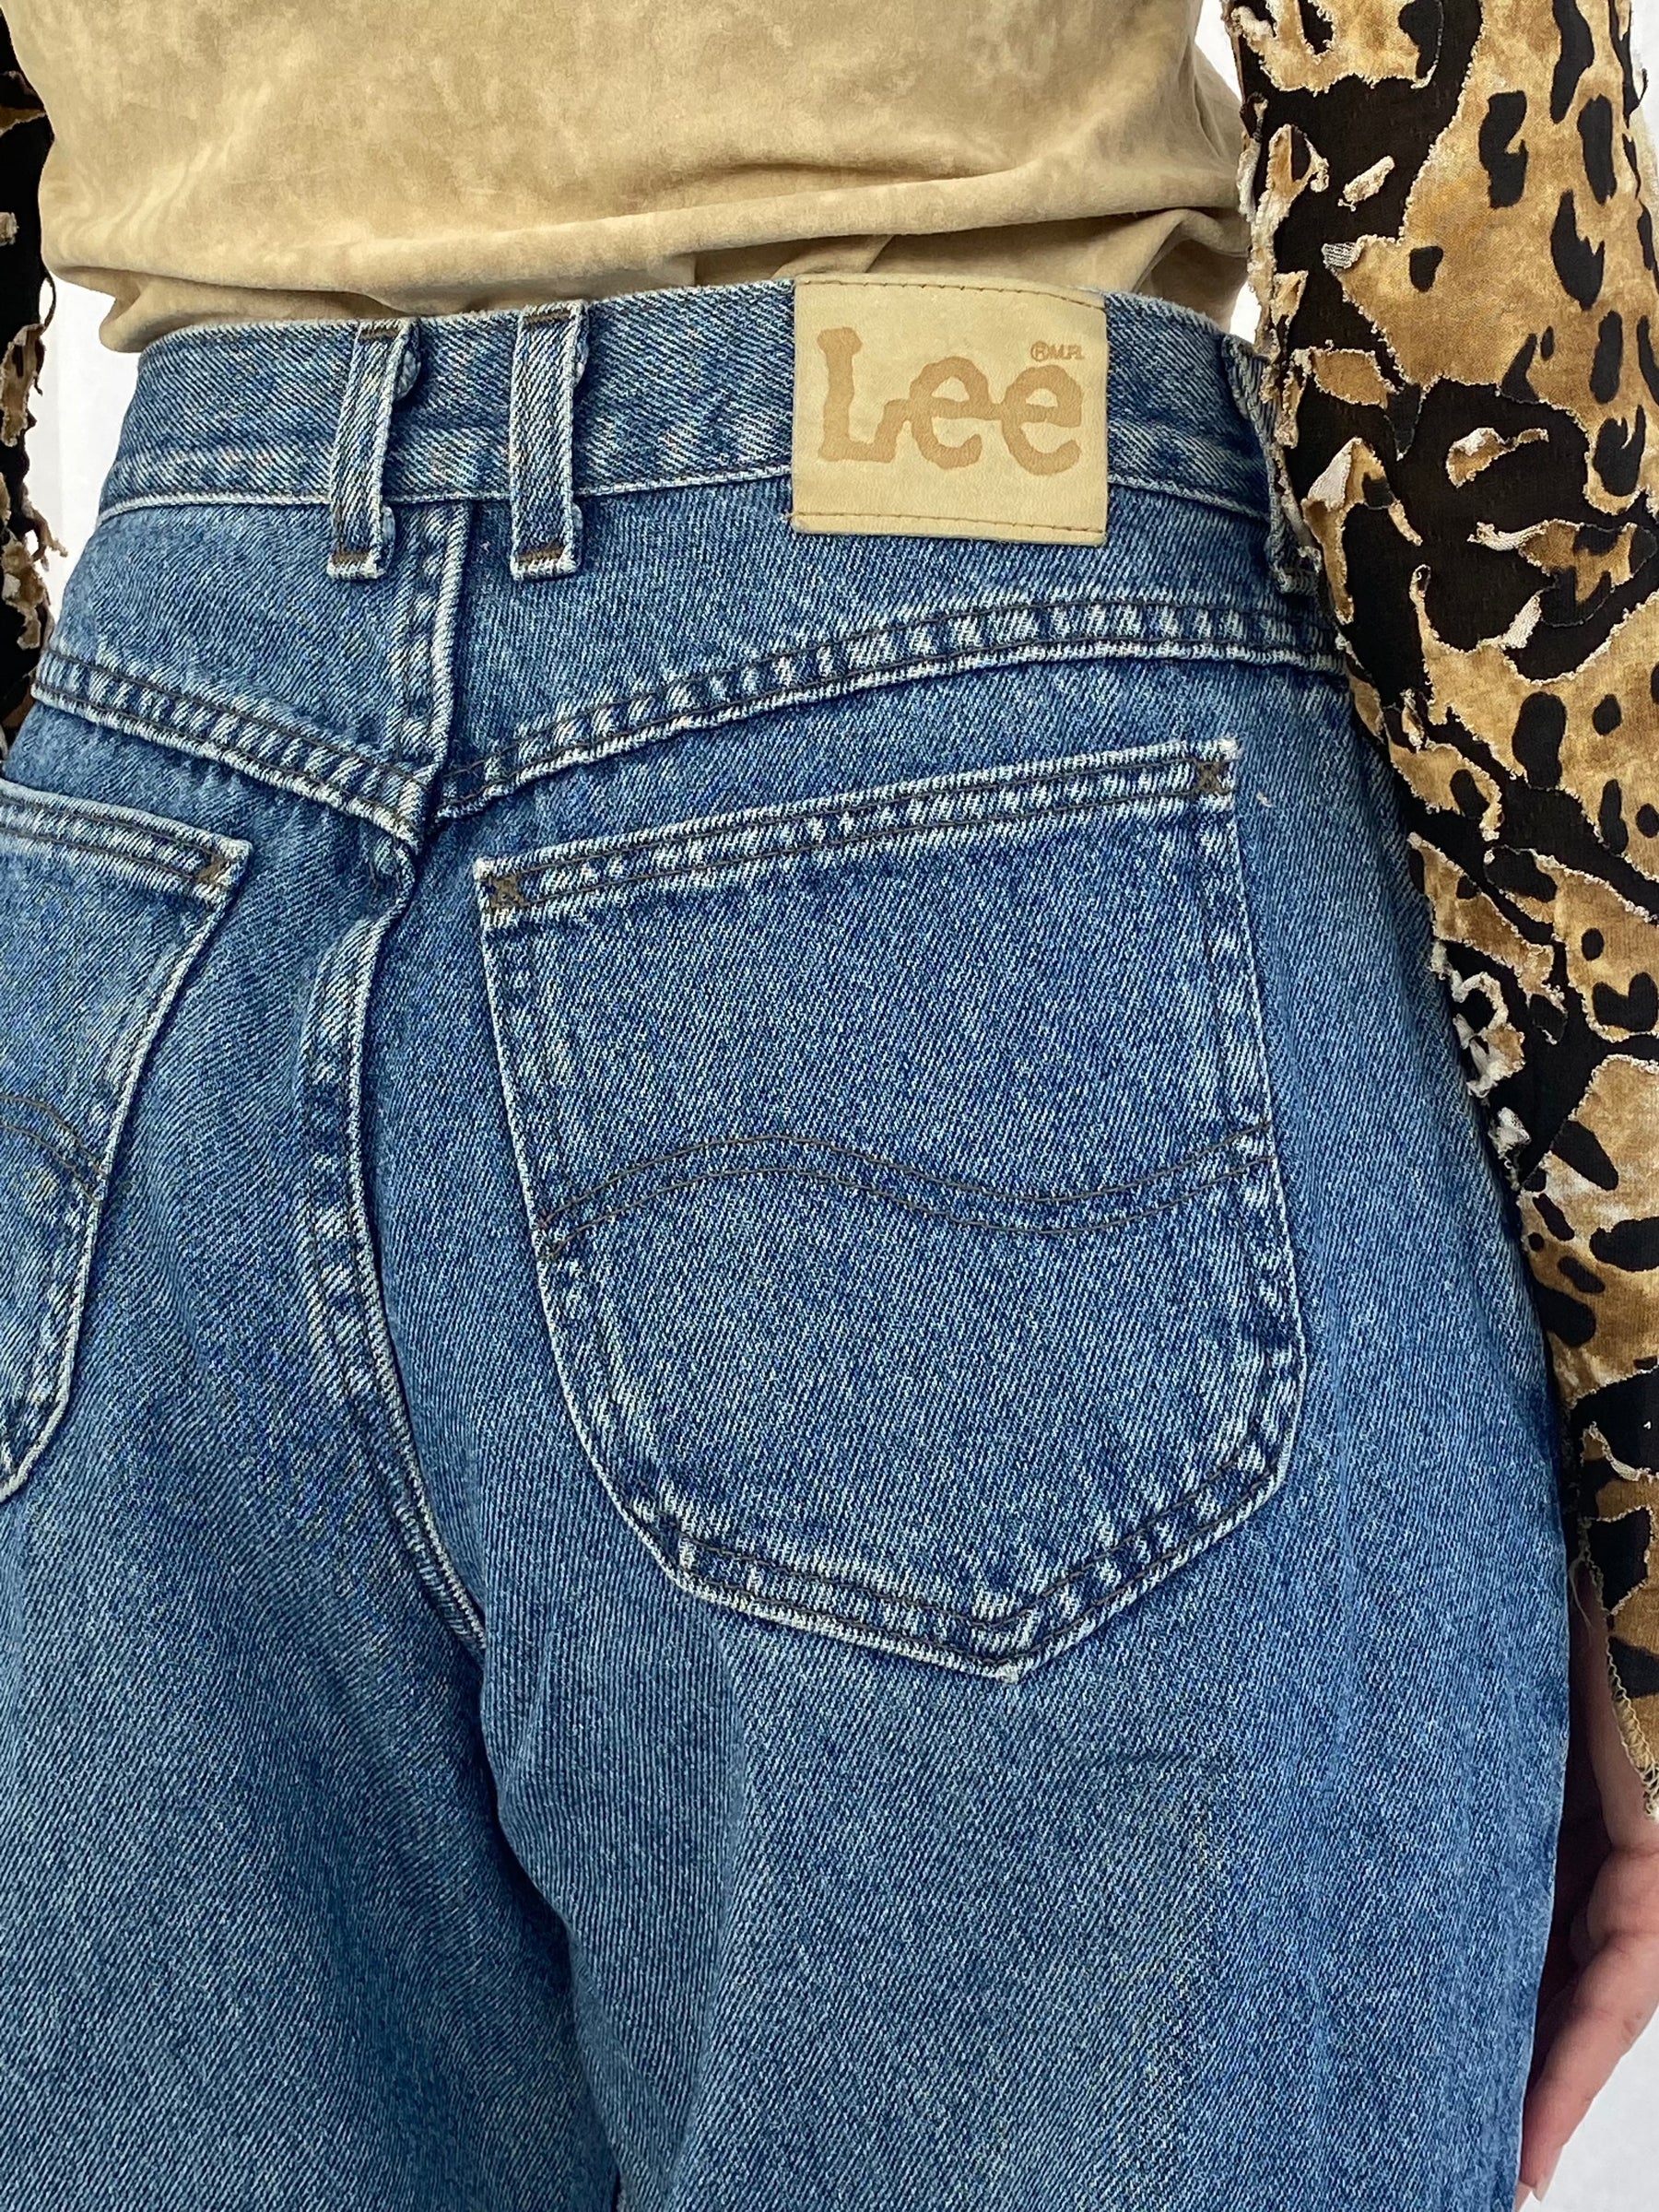 Vintage Lee Jeans - Balagan Vintage